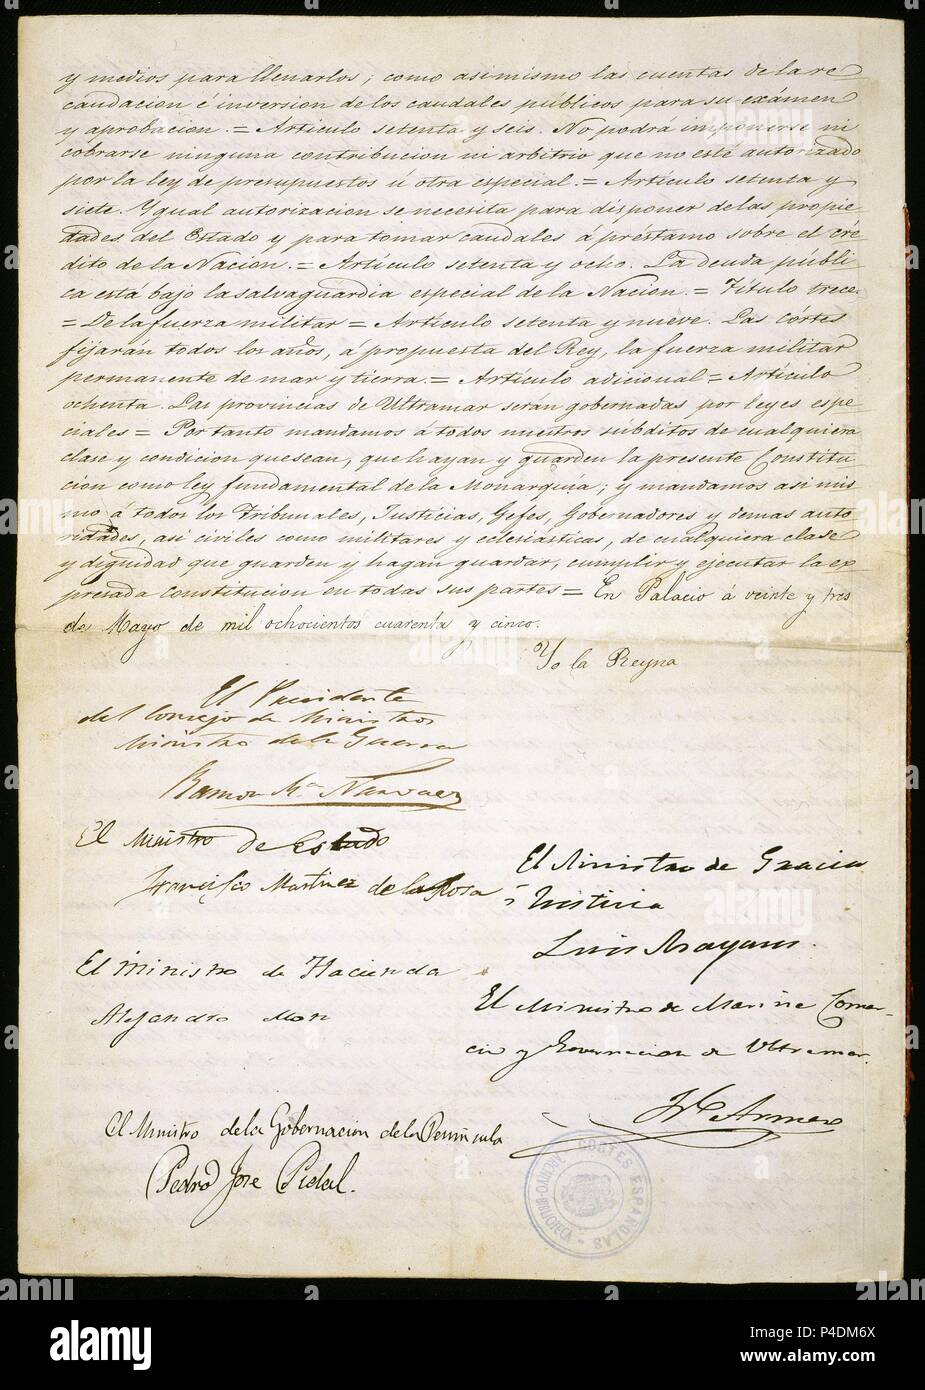 CONSTITUCION-UTLIMA PAGINA-MADRID 23 DE MAYO DE 1845. Location: CONGRESO DE LOS DIPUTADOS-BIBLIOTECA, MADRID, SPAIN. Stock Photo